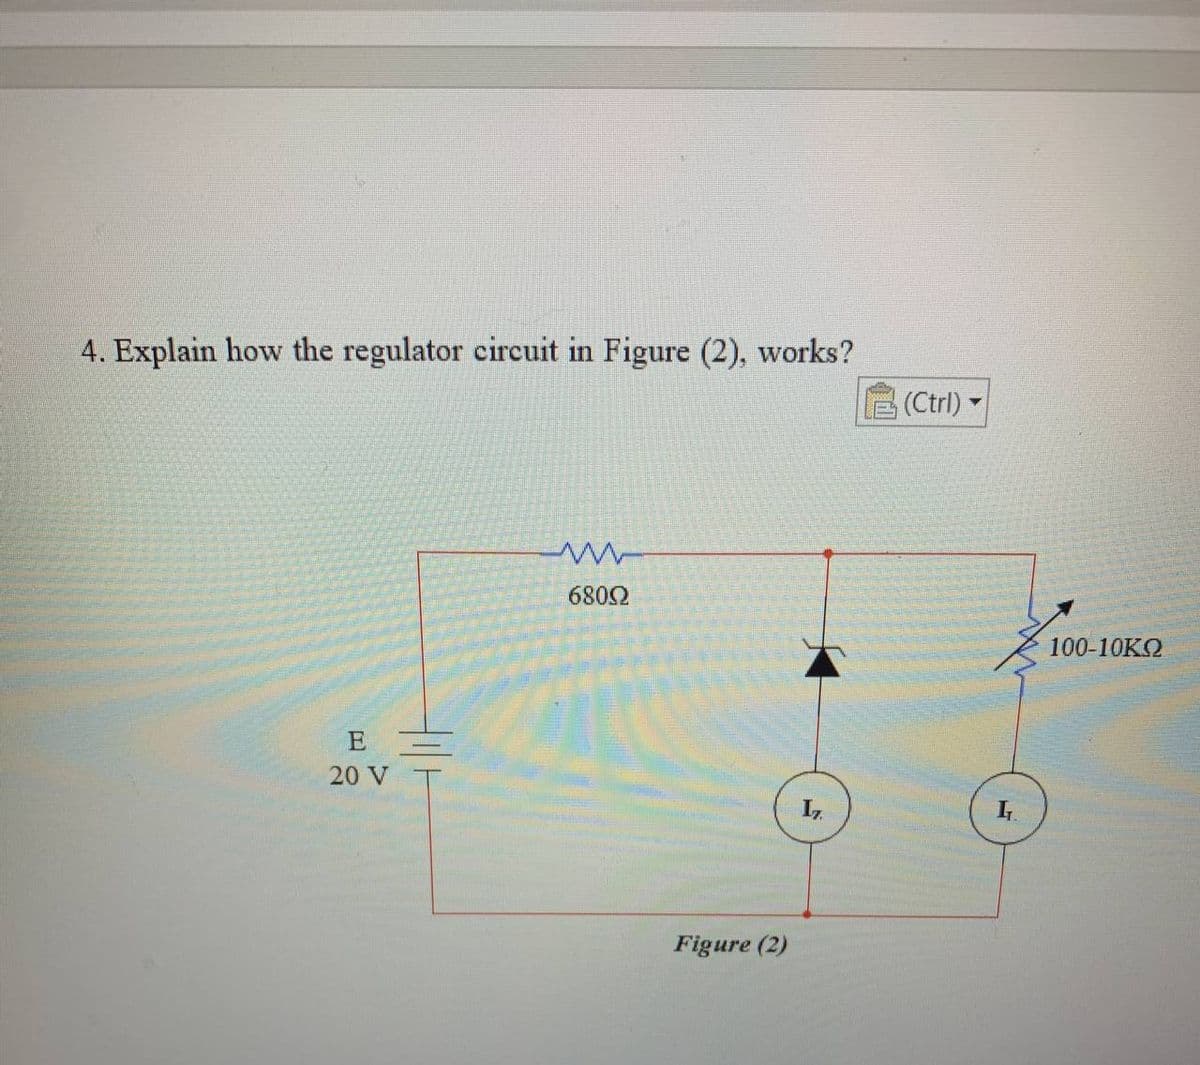 4. Explain how the regulator circuit in Figure (2), works?
E
20 V
til
w
68092
Figure (2)
17.
(Ctrl) -
I
100-10ΚΩ